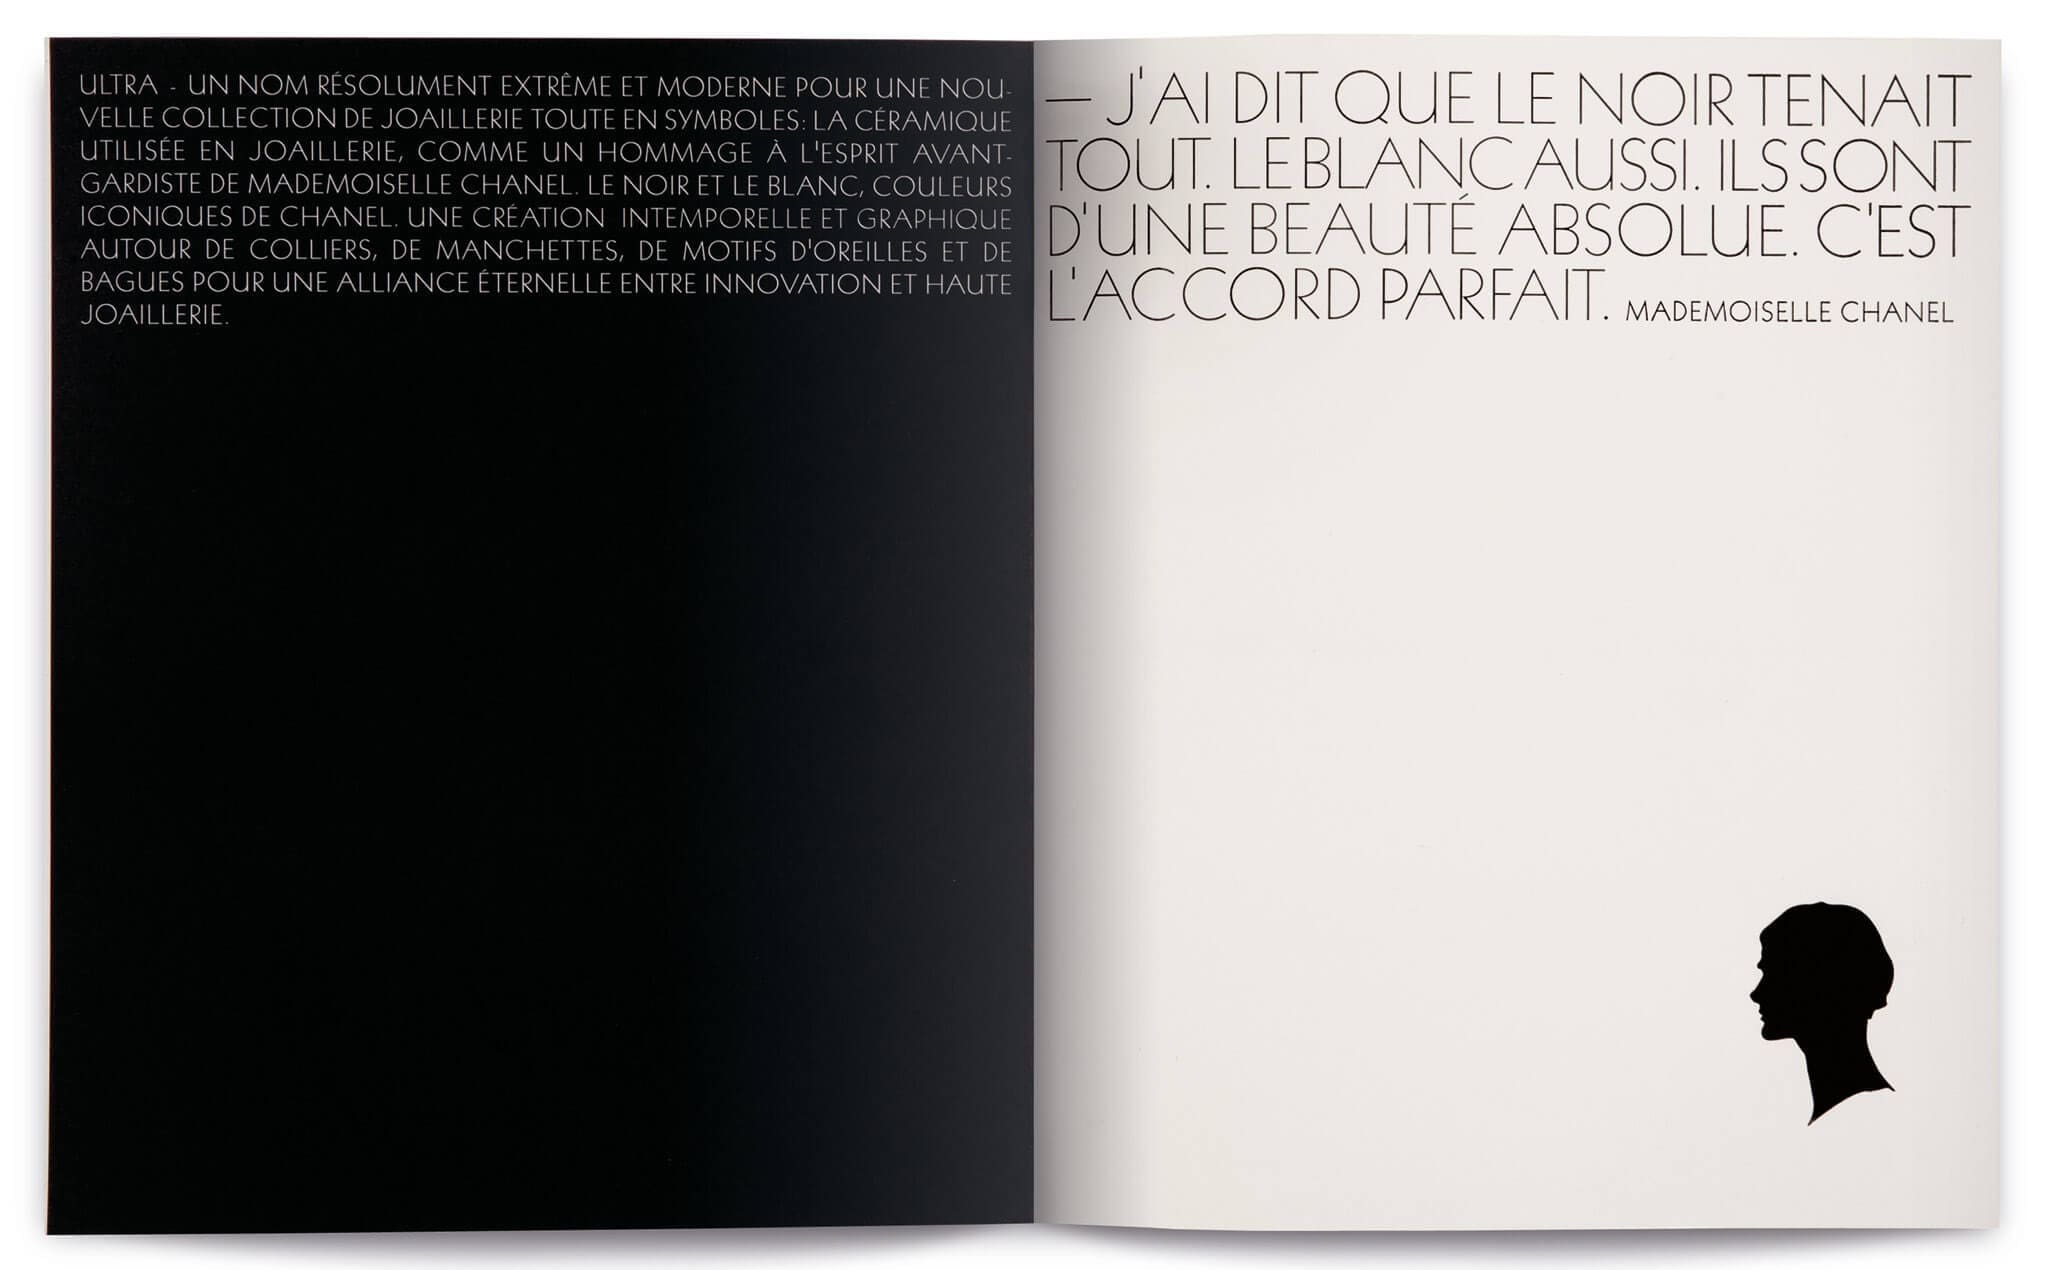 Double page du dossier de presse Chanel ultra, en noir et blanc sous la direction artistique d'IchetKar